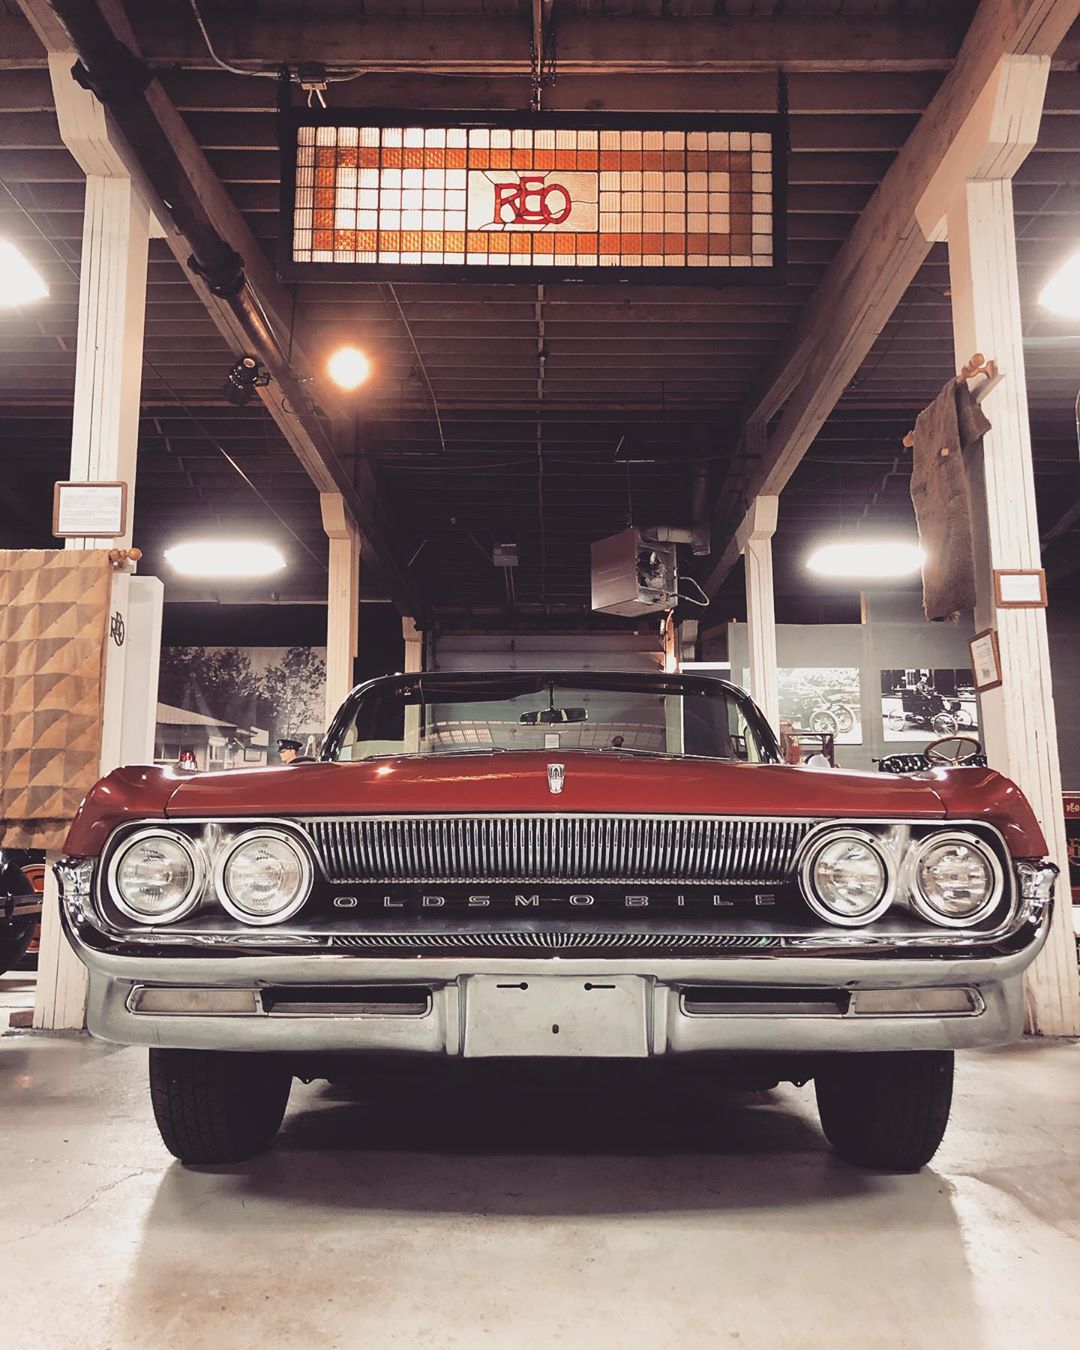 Oldsmobile Super 88 Inside of the R.E. Olds Transportation Museum. Photo by Instagram user @_justparker